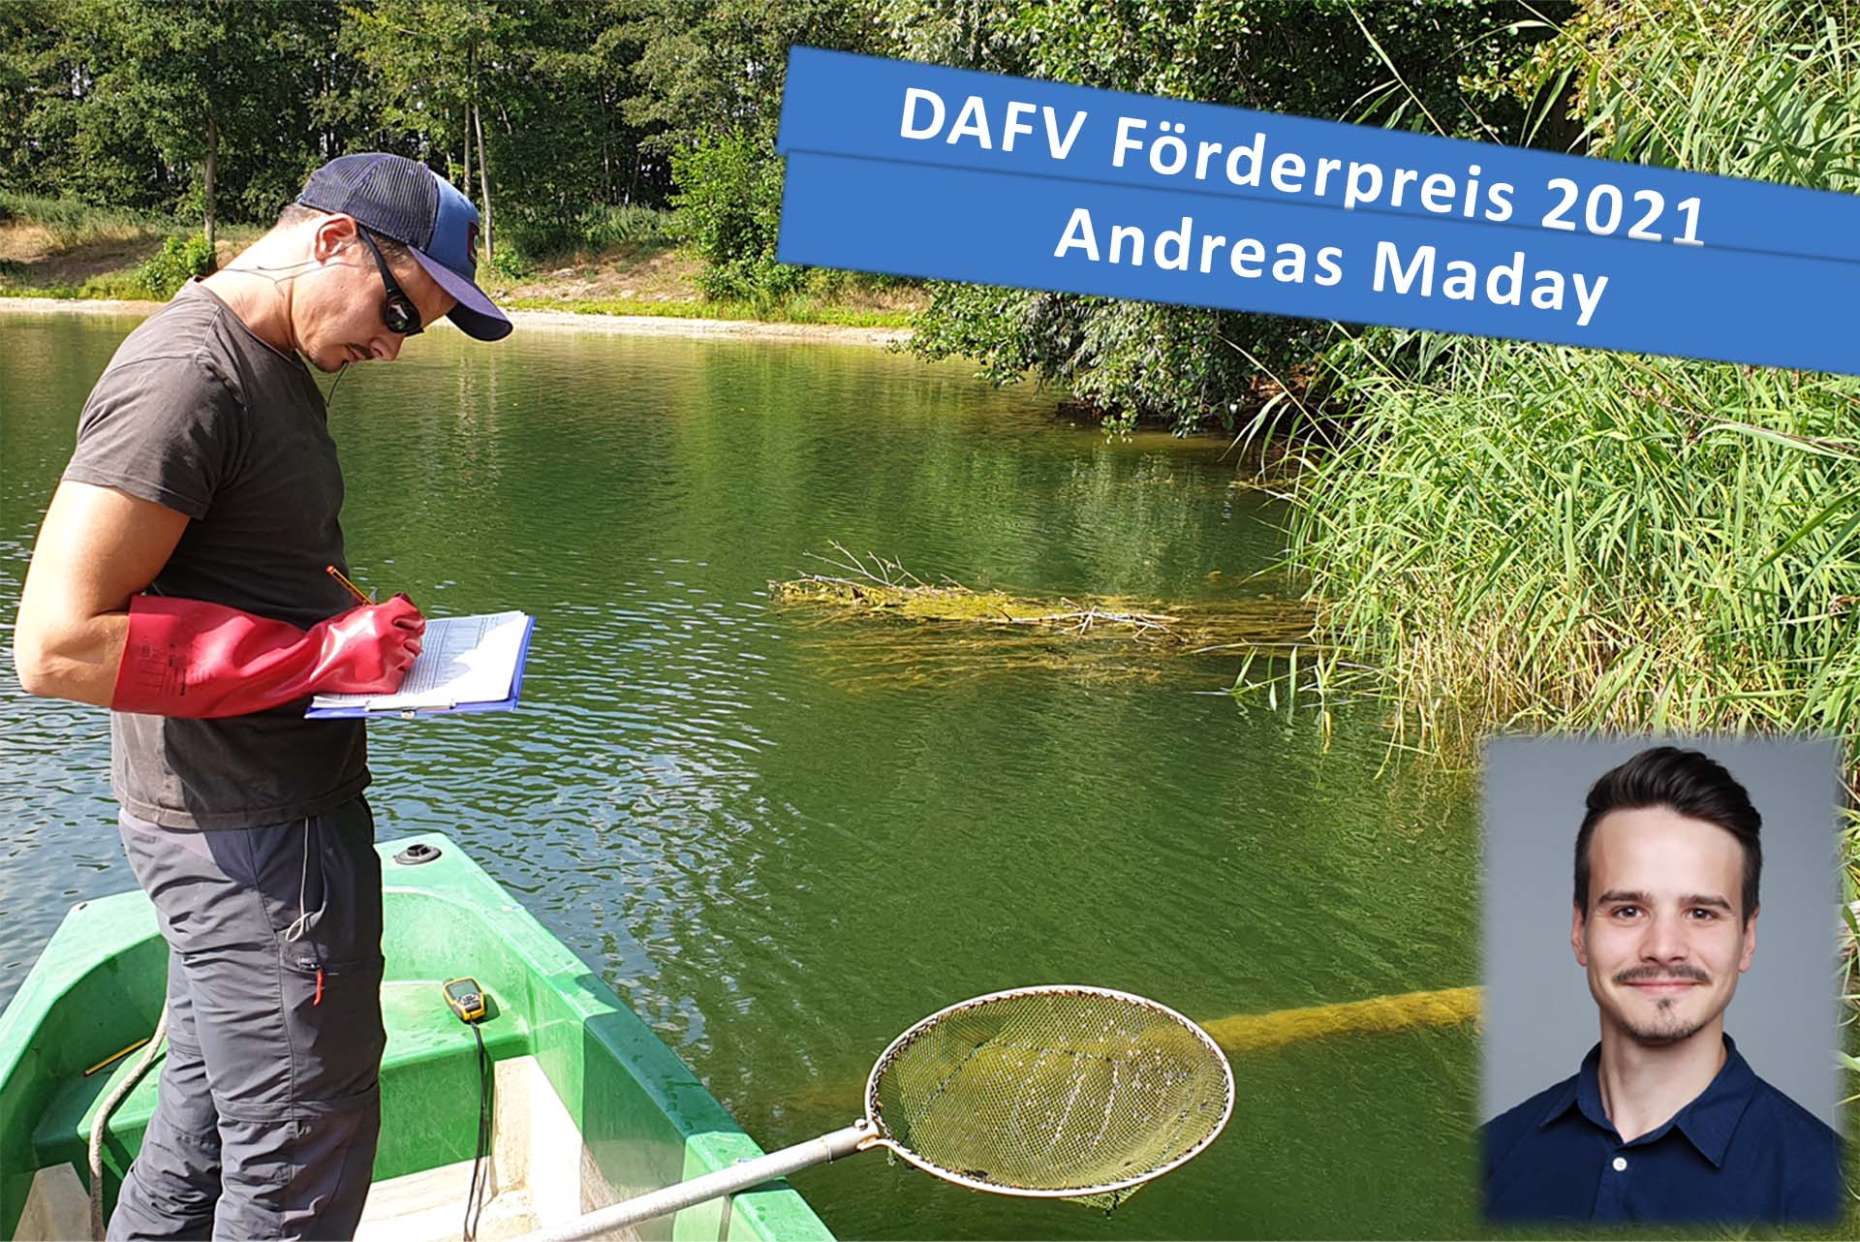 Der Förderpreis 2021 des DAFV geht an Andreas Maday, der in seiner Masterarbeit die Auswirkungen von Totholz auf Fischbestände untersuchte.